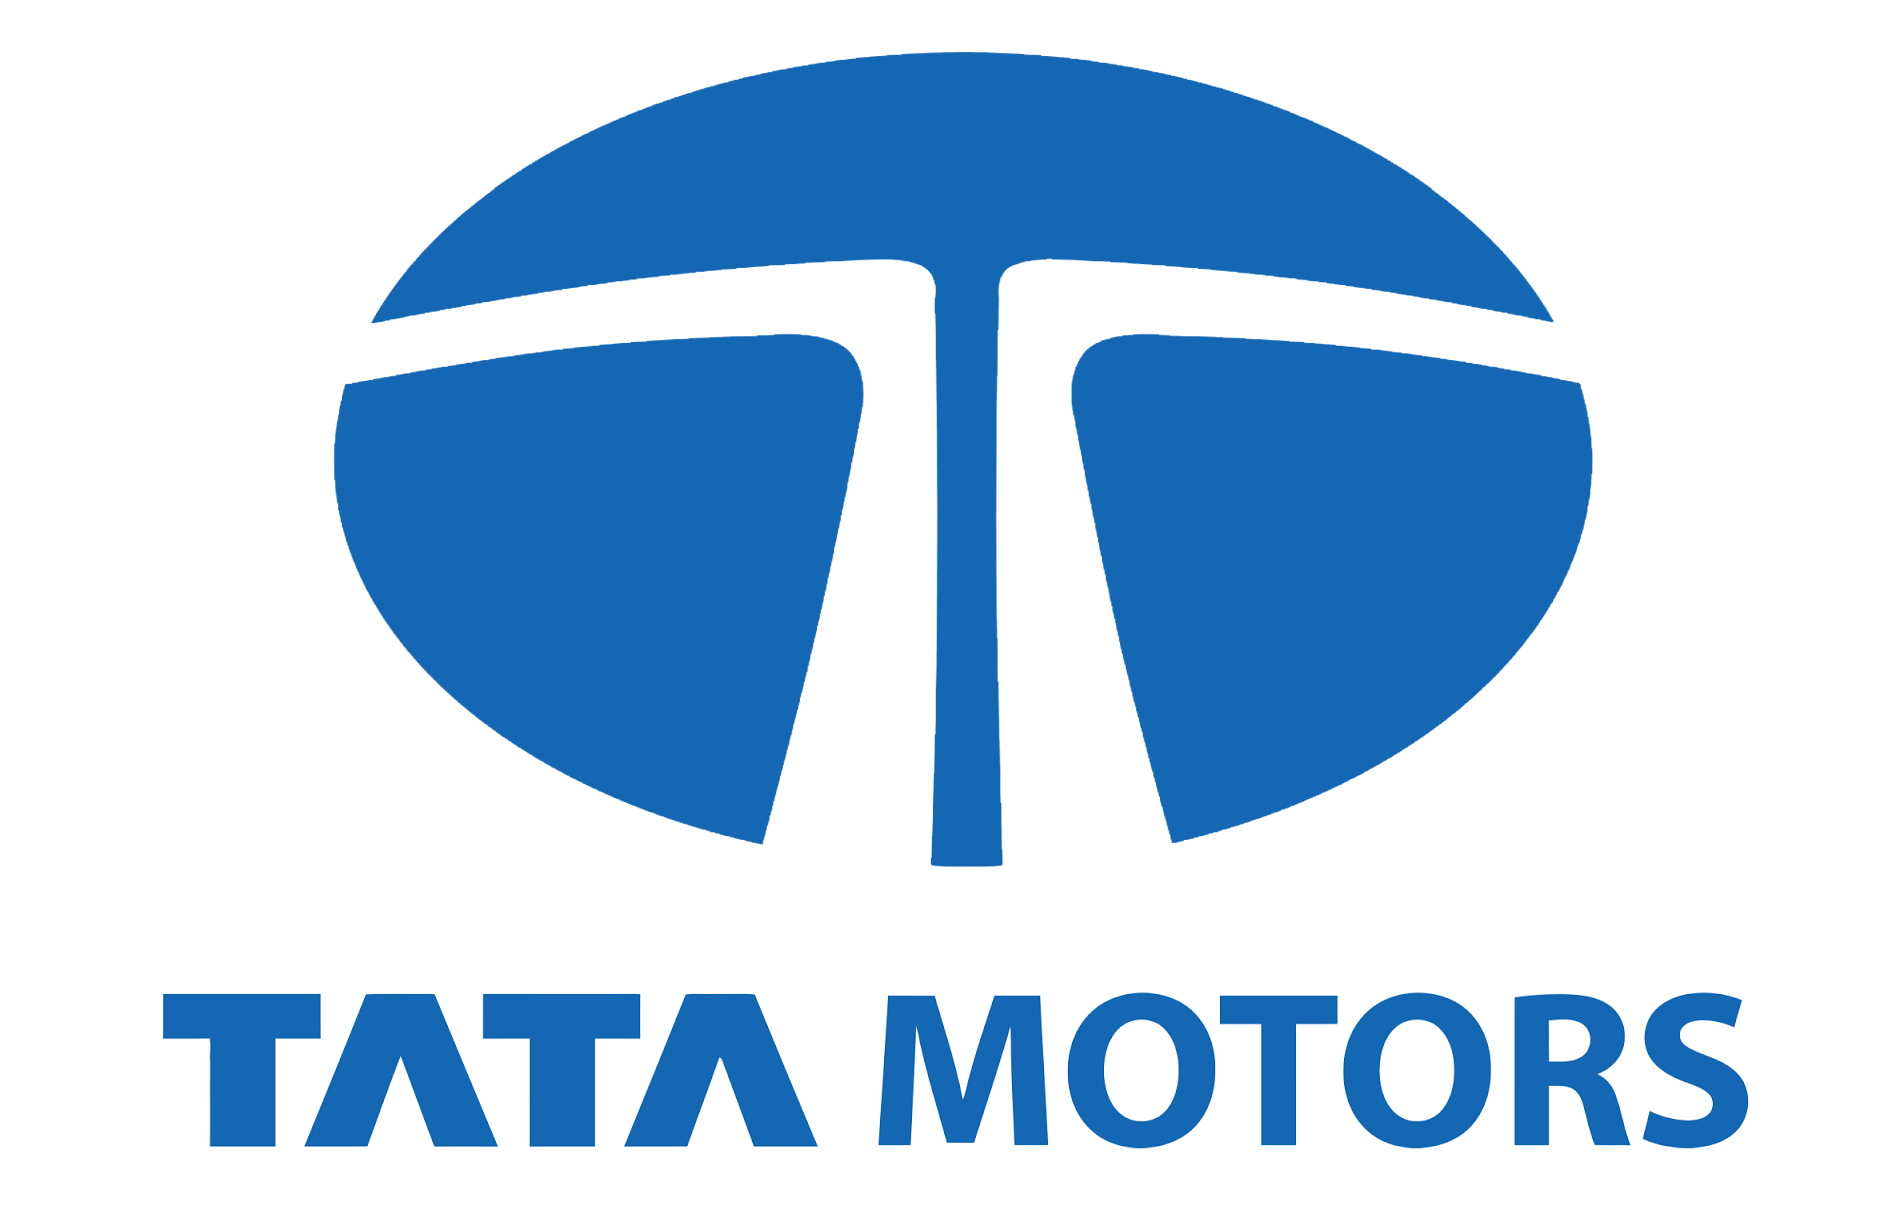 Tata Motors Cars Showroom - Classic Motors|Show Room|Automotive